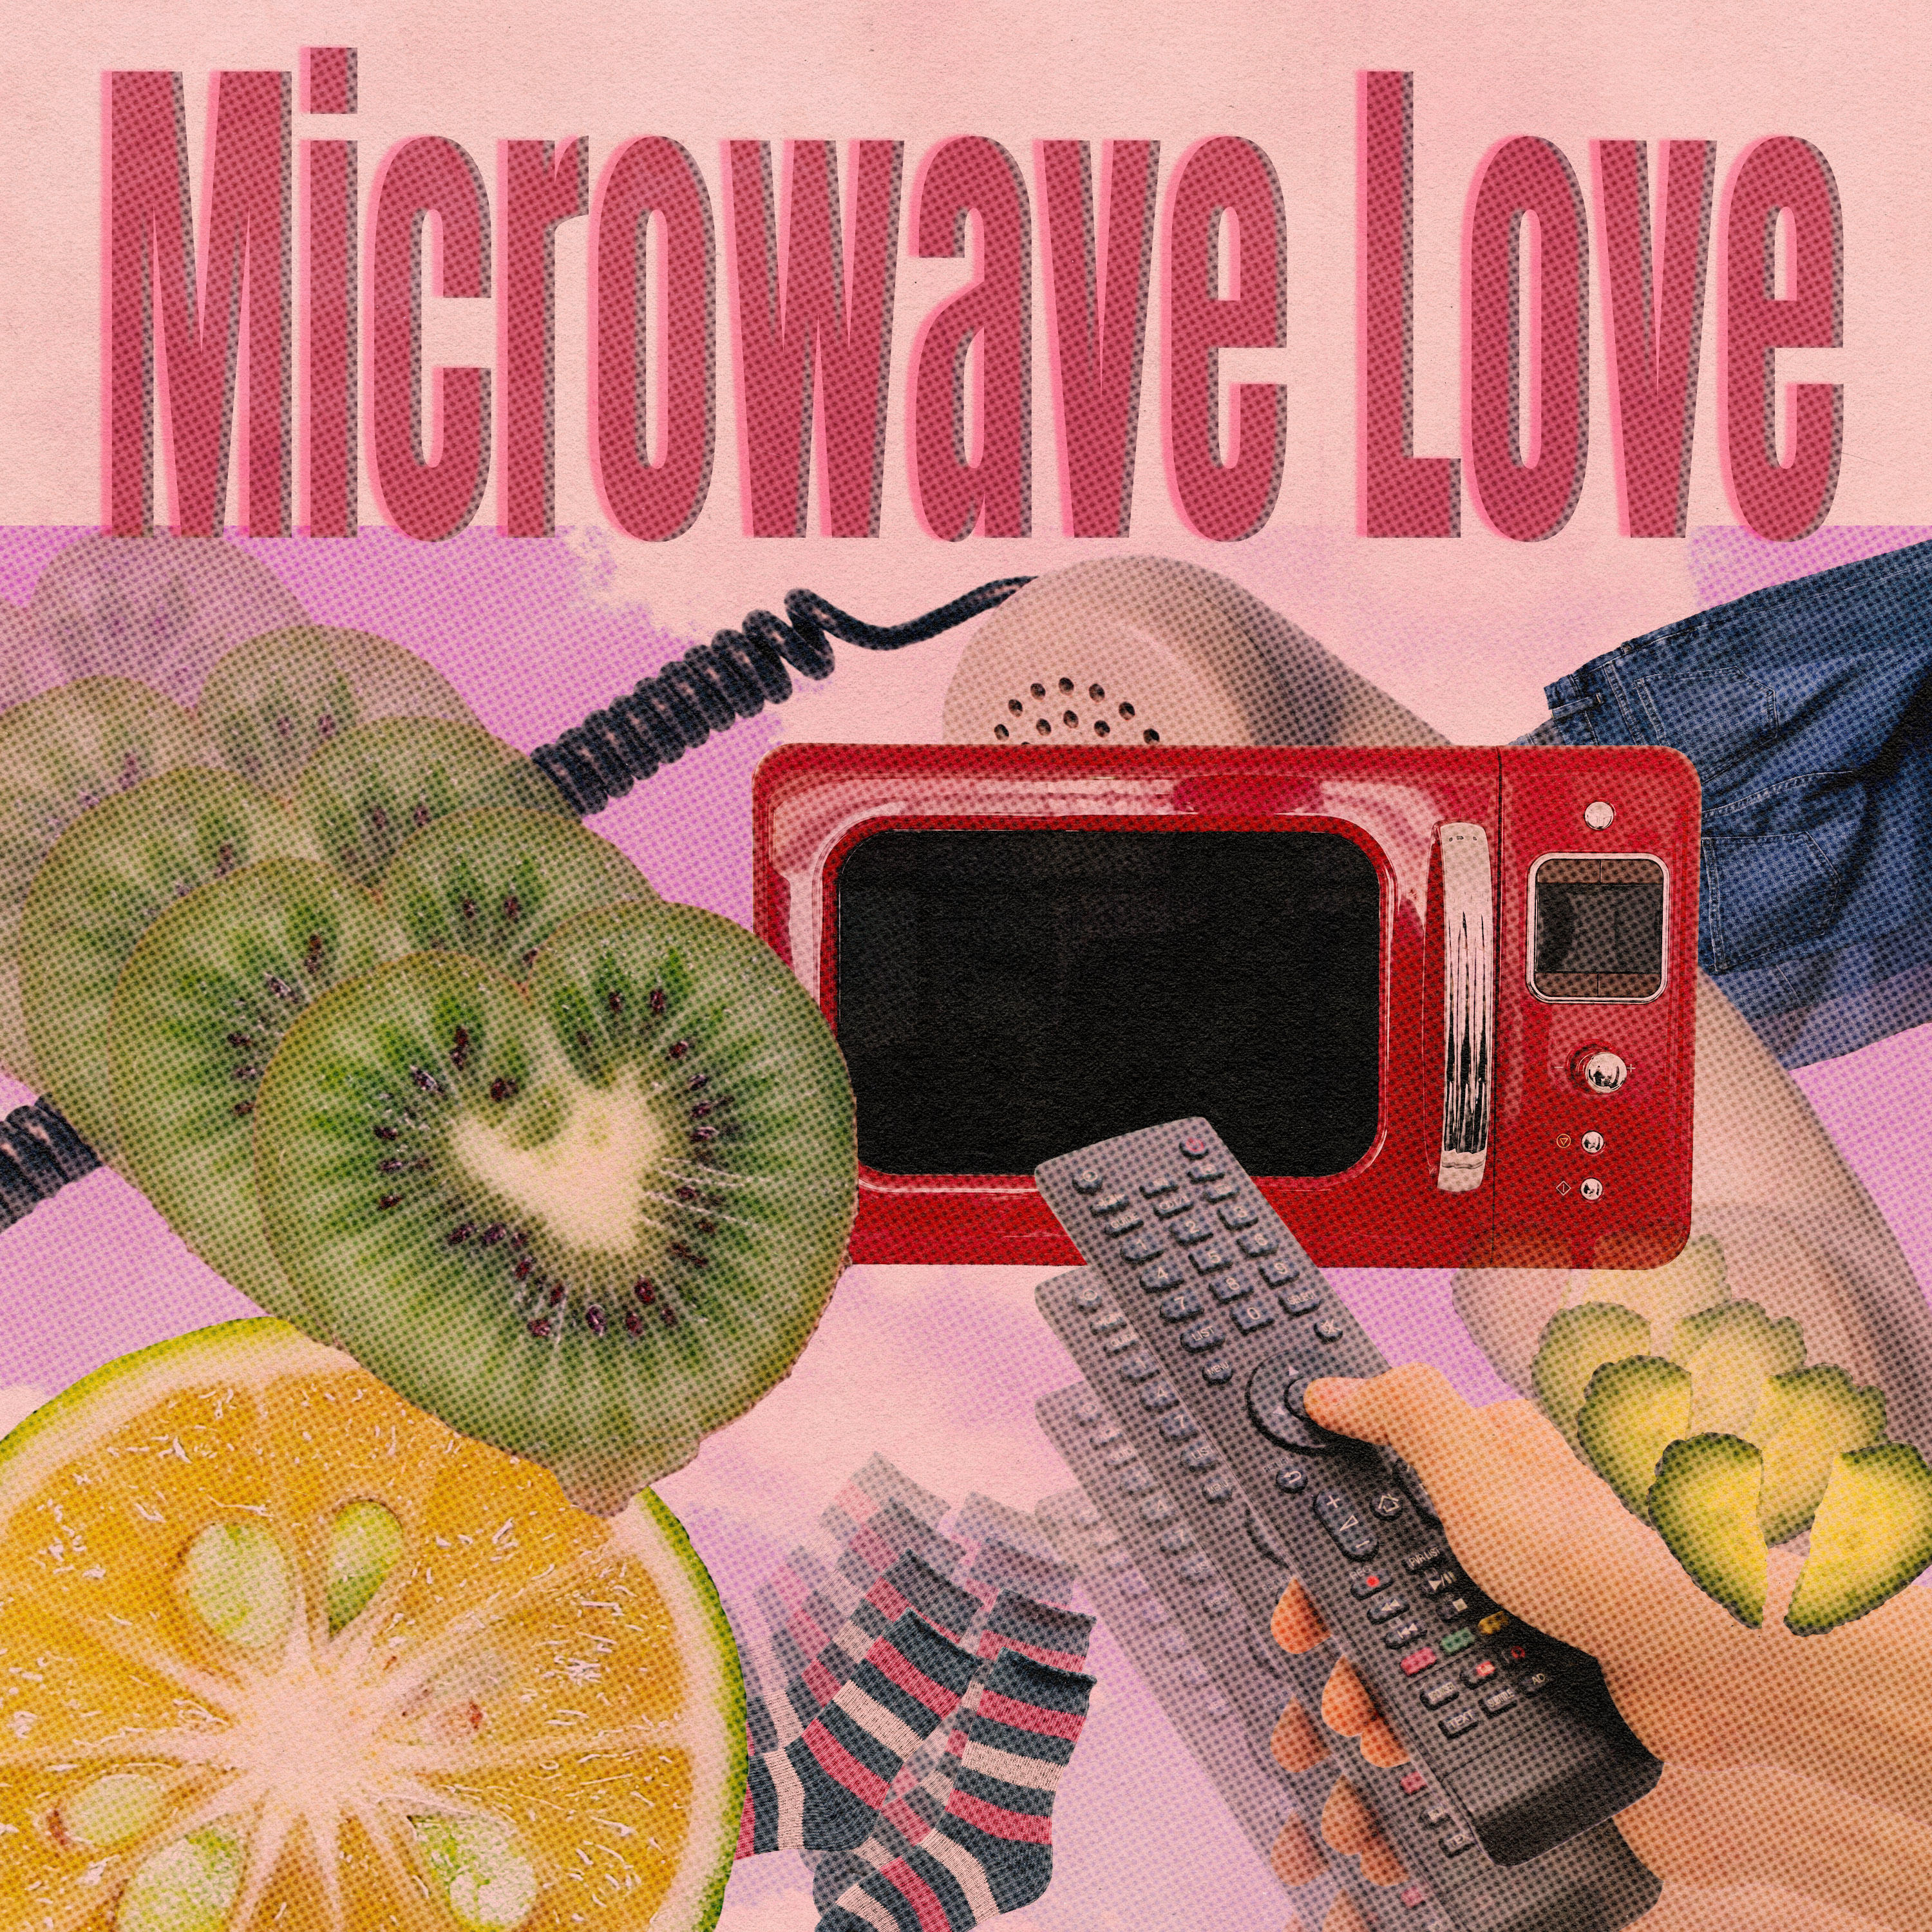 Microwave Love